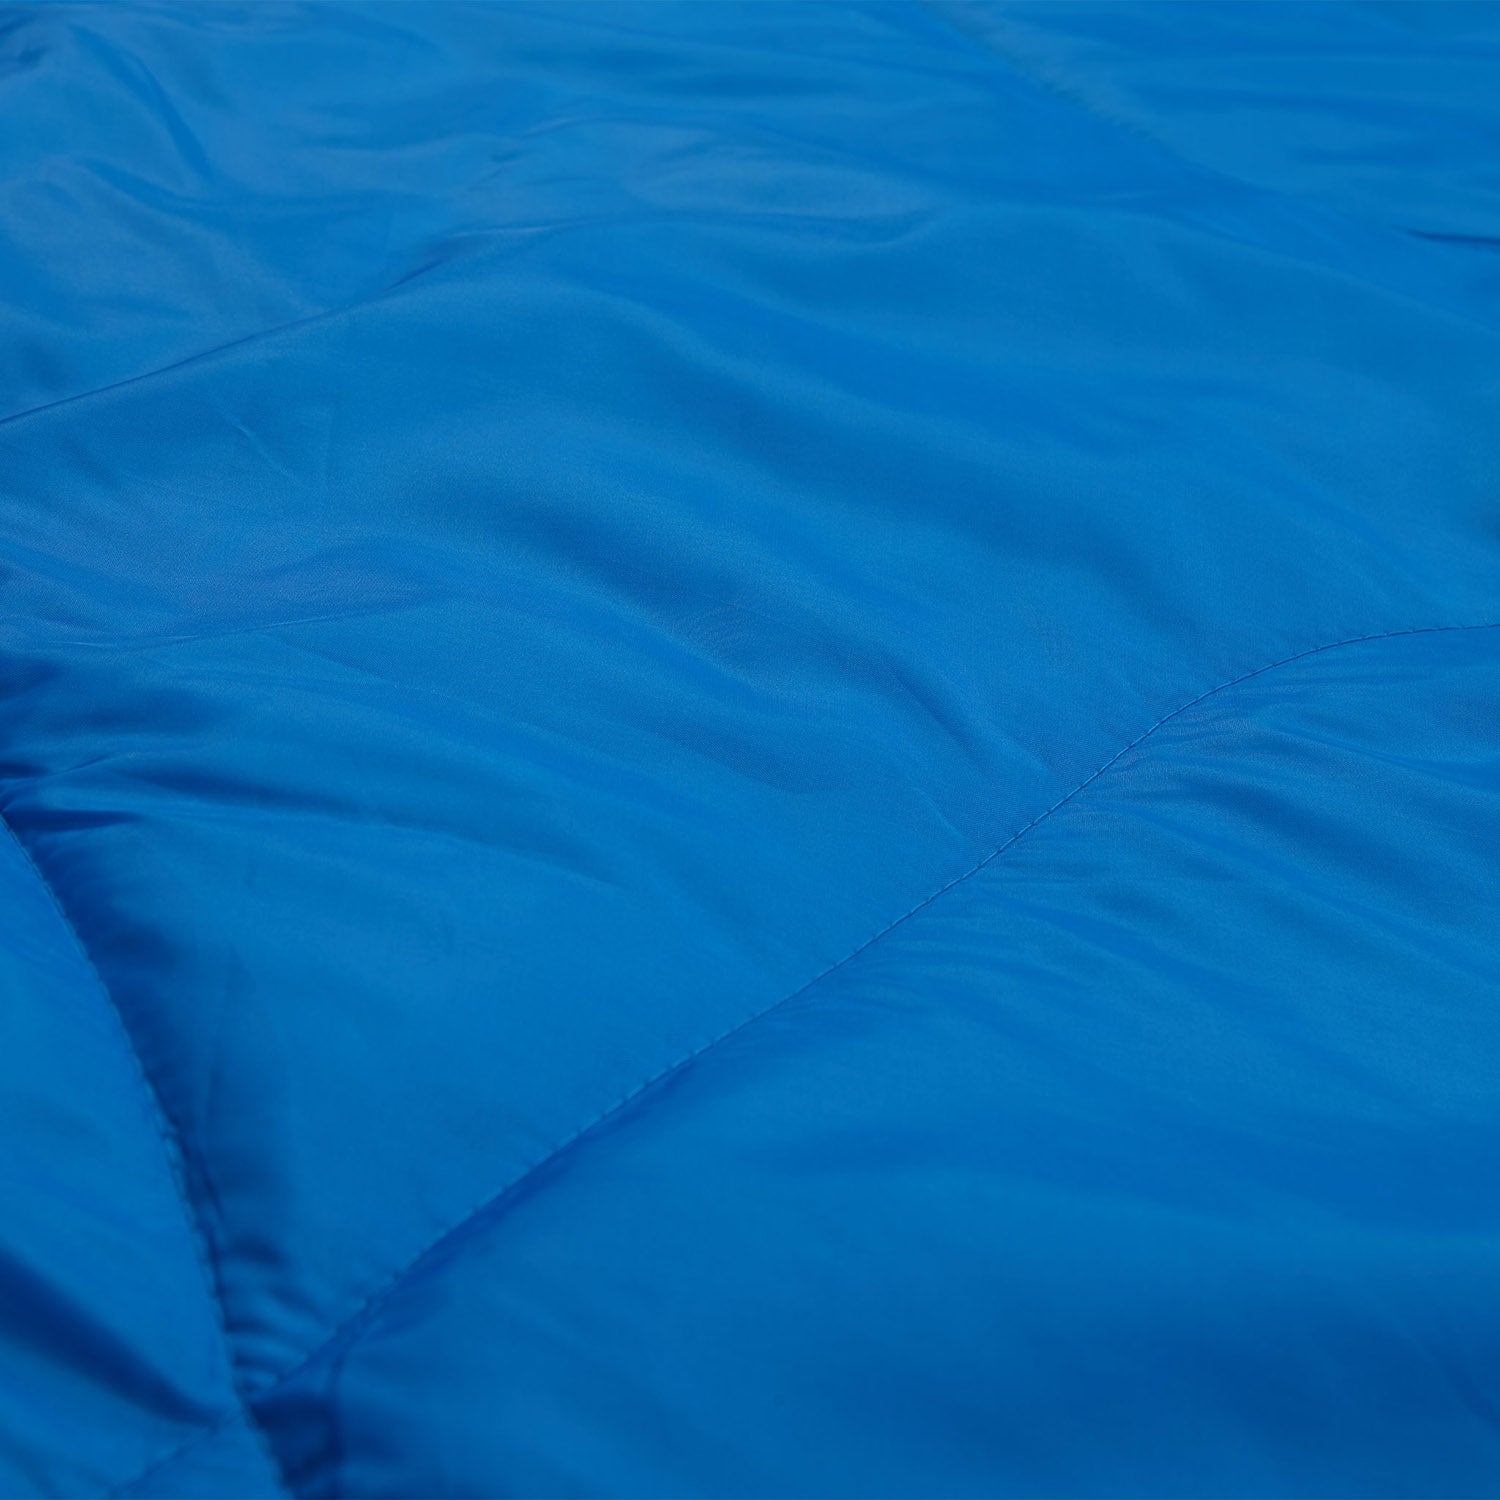 Doppelschlafsack mit Tragetasche - 2-Personen Schlafsack - 190 x 150 cm - Royalblau